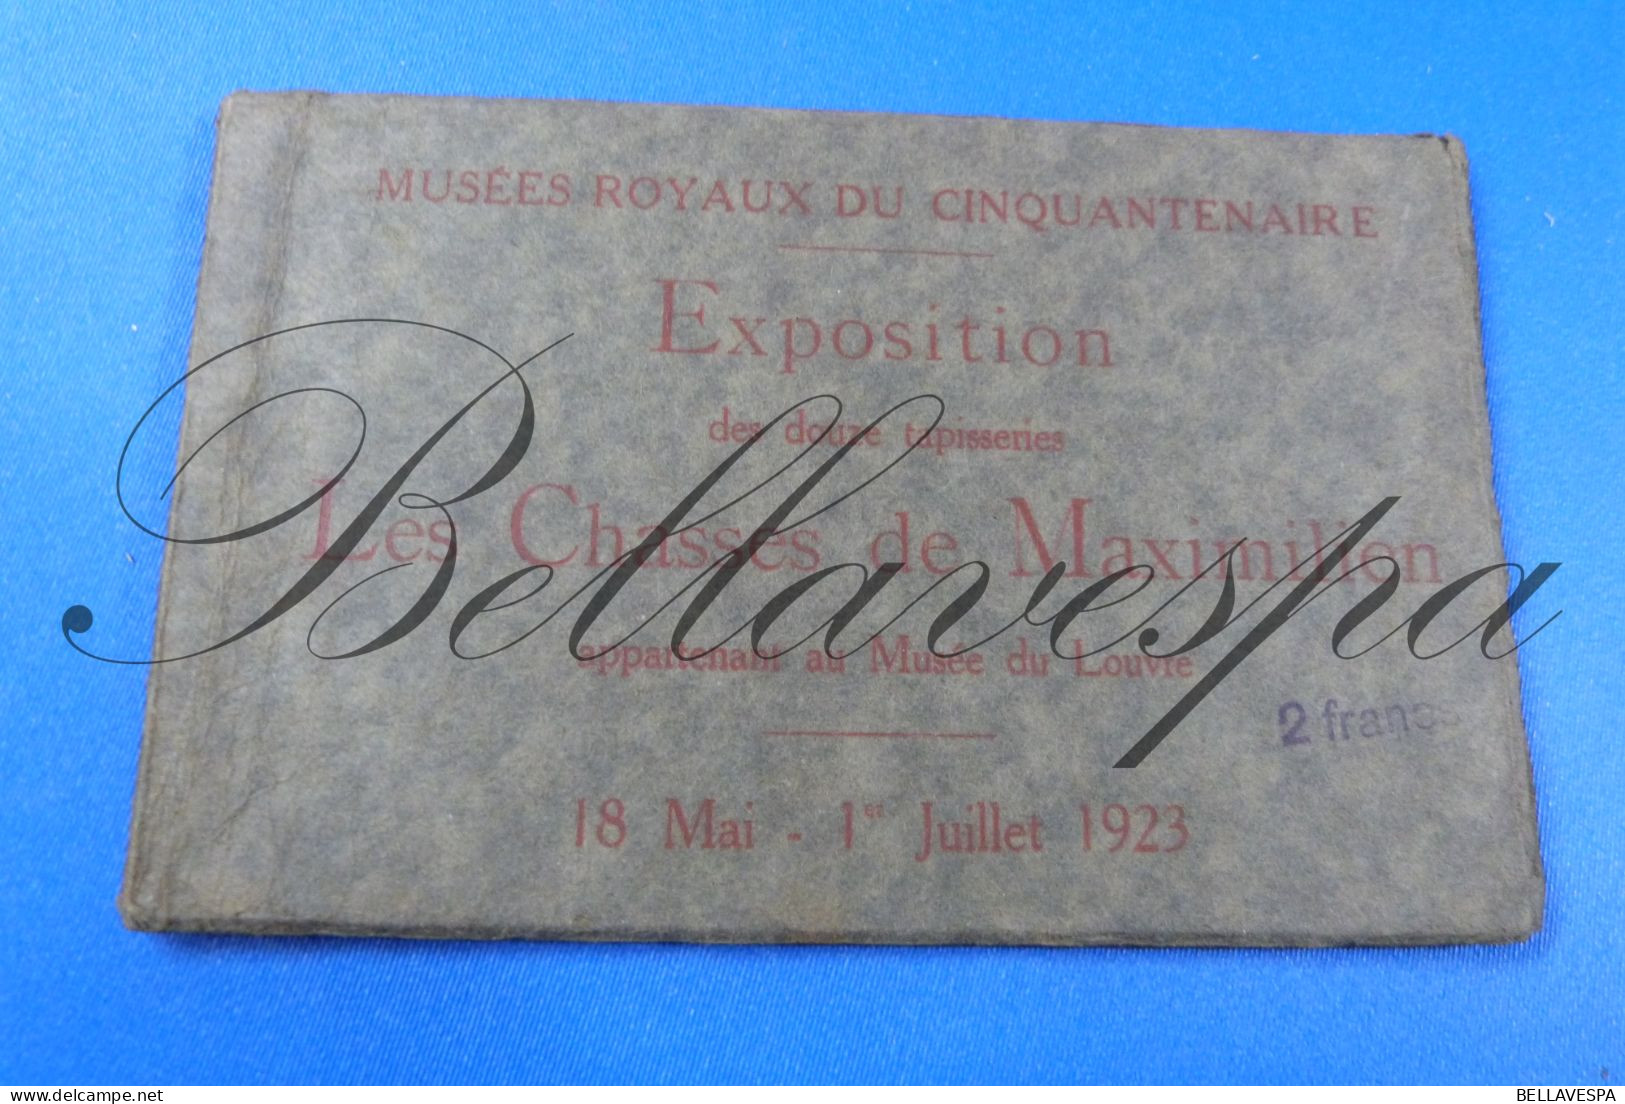 Musées Royaux Expo Lot X 10 Cpa Wandtapijten Tapis Les Chasses De Maximilien  Bruxelles - Louvre 18 Mai -1 Jullet 1923 - Articles Of Virtu